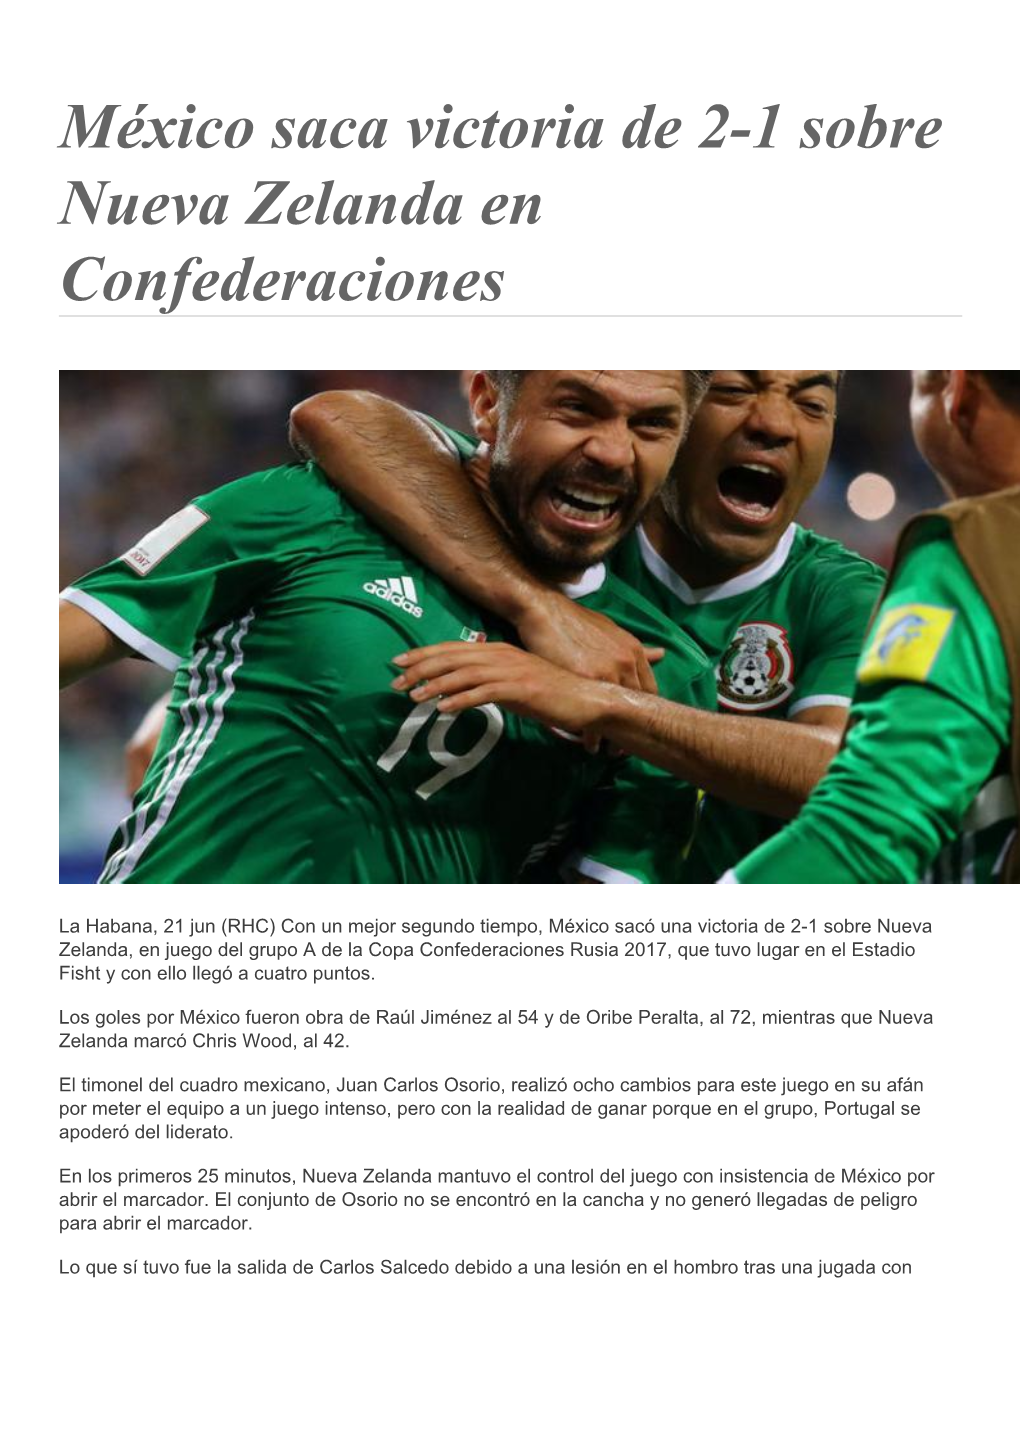 México Saca Victoria De 2-1 Sobre Nueva Zelanda En Confederaciones